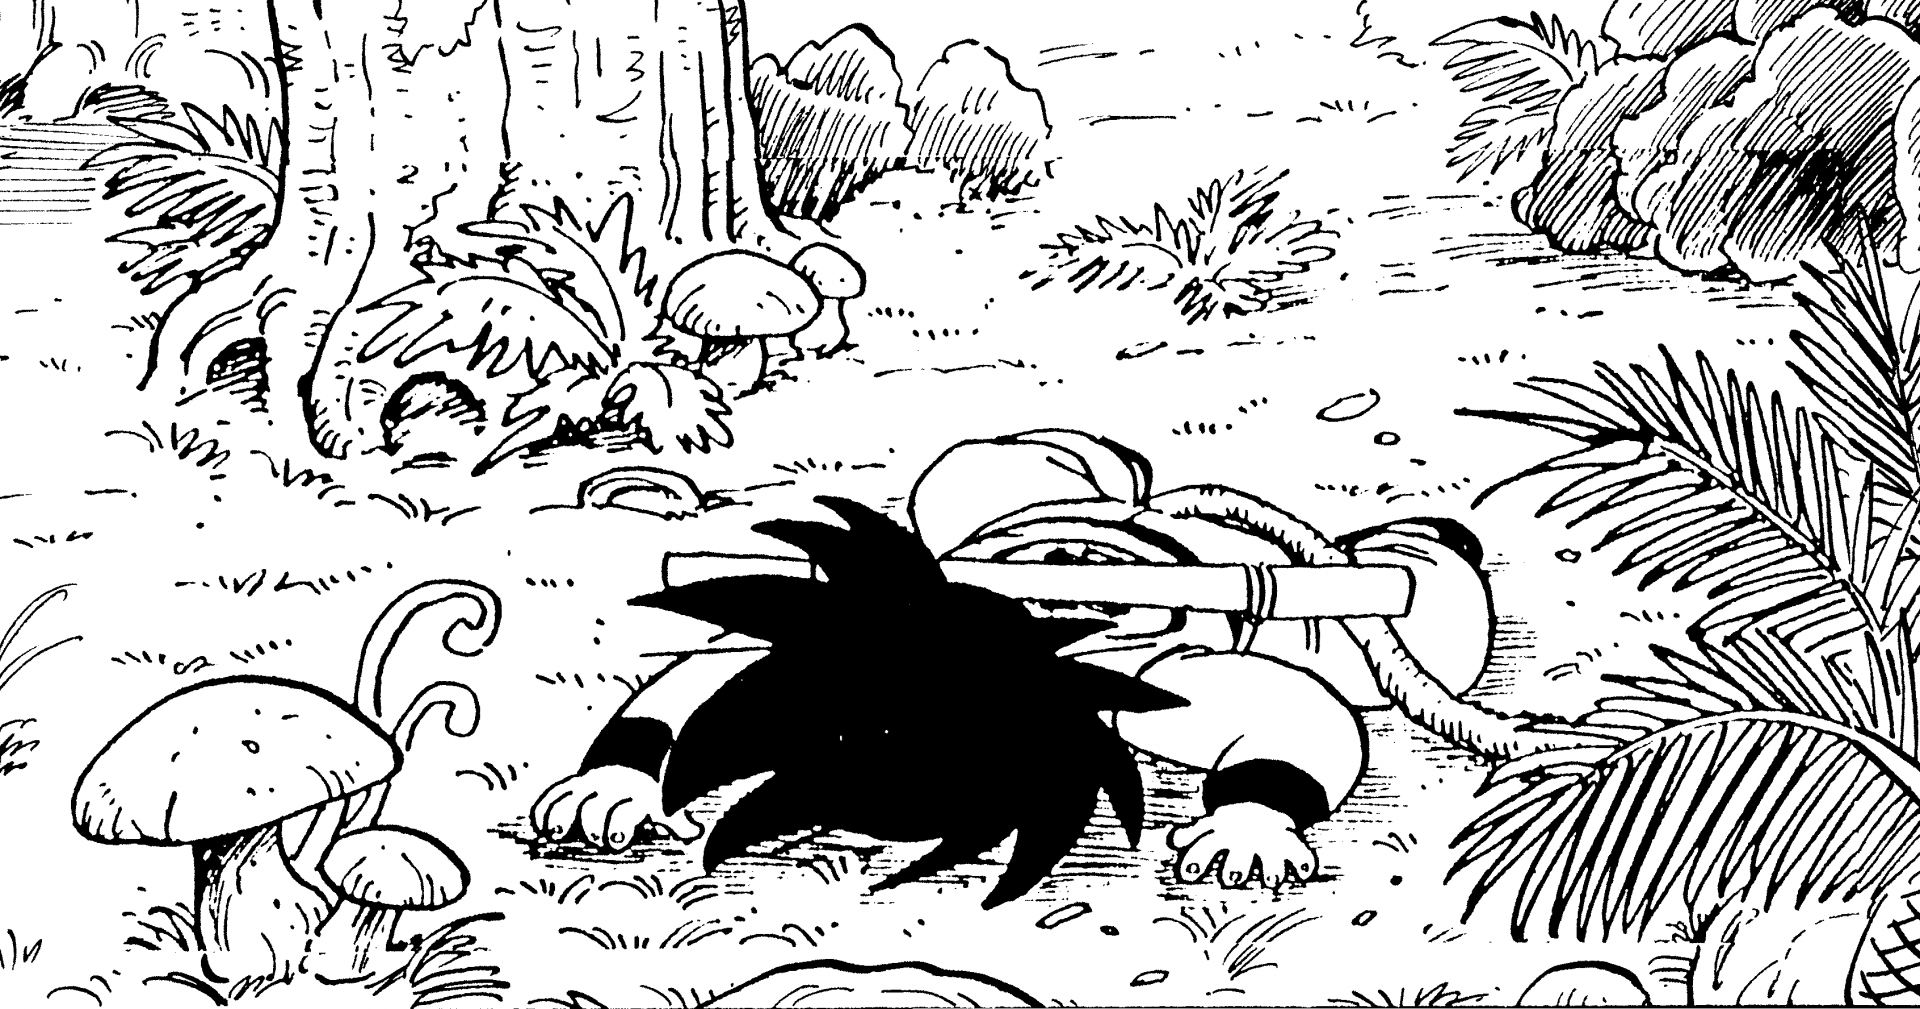 〜 Dem Originalwerk auf der Spur: File #015〜 World Travelogue: Ort von Gokus erster Begegnung mit Yajirobe